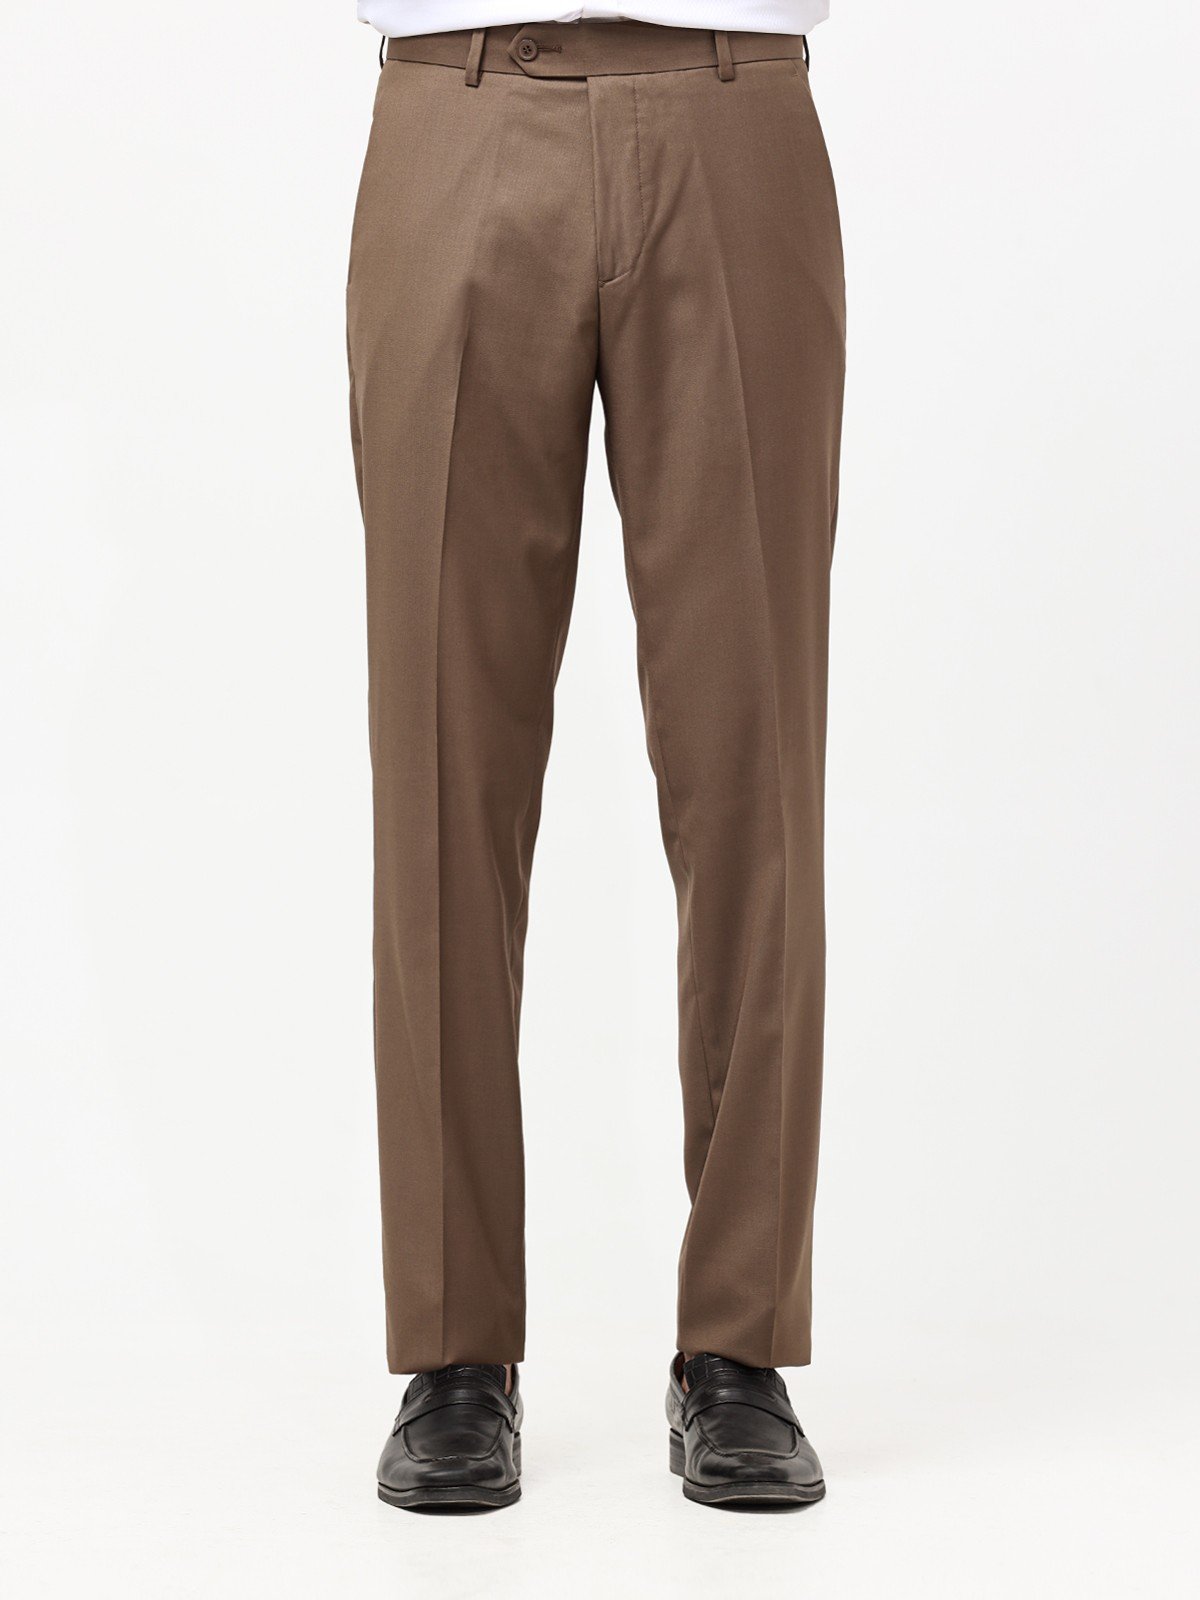 Men's Brown Pant - EMBPF22-15246